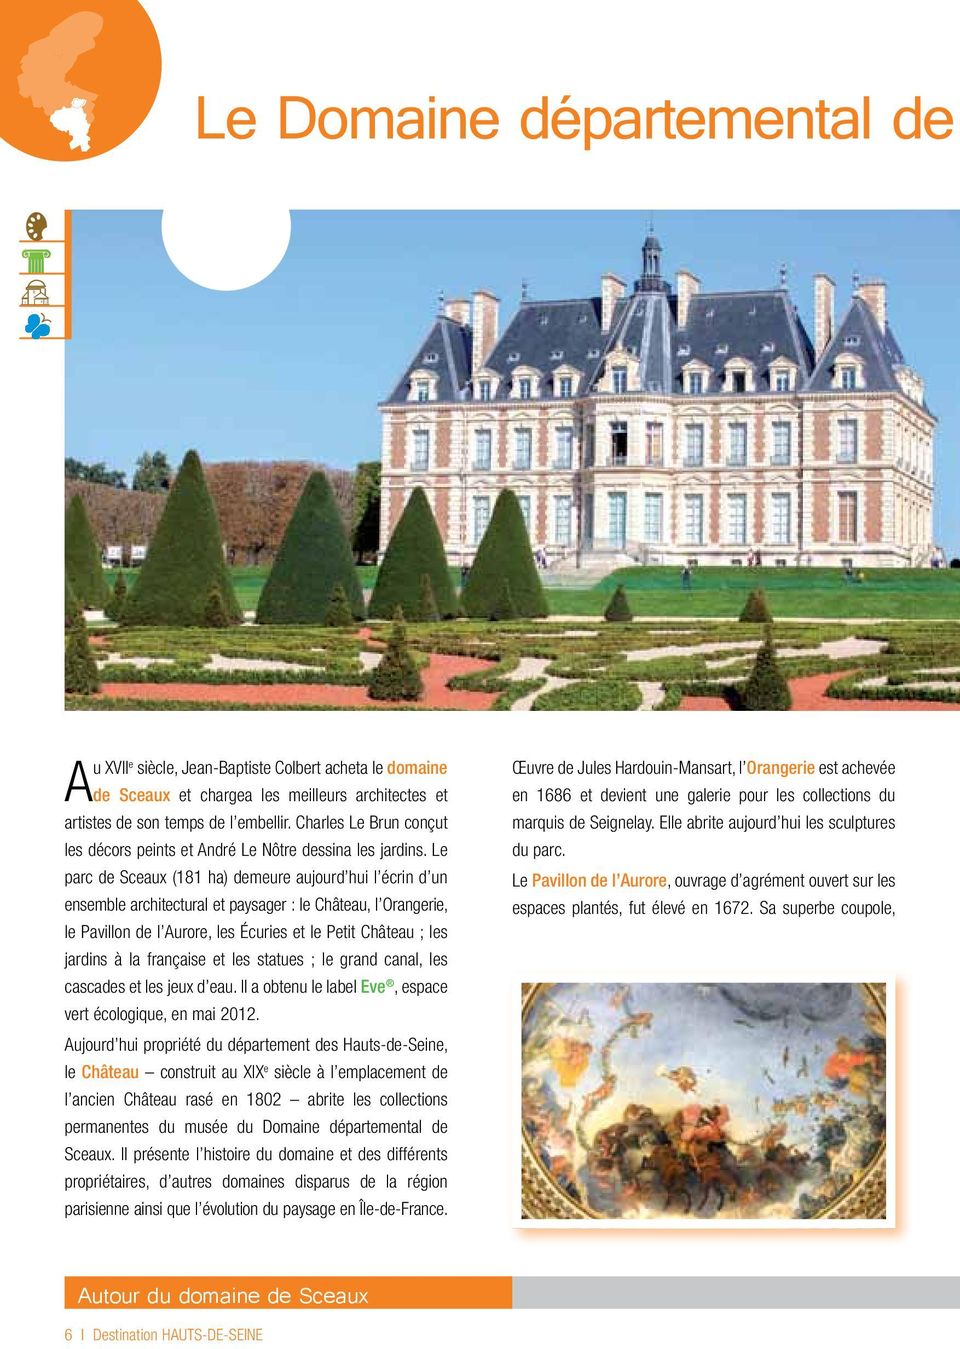 Le parc de Sceaux (181 ha) demeure aujourd hui l écrin d un ensemble architectural et paysager : le Château, l Orangerie, le Pavillon de l Aurore, les Écuries et le Petit Château ; les jardins à la